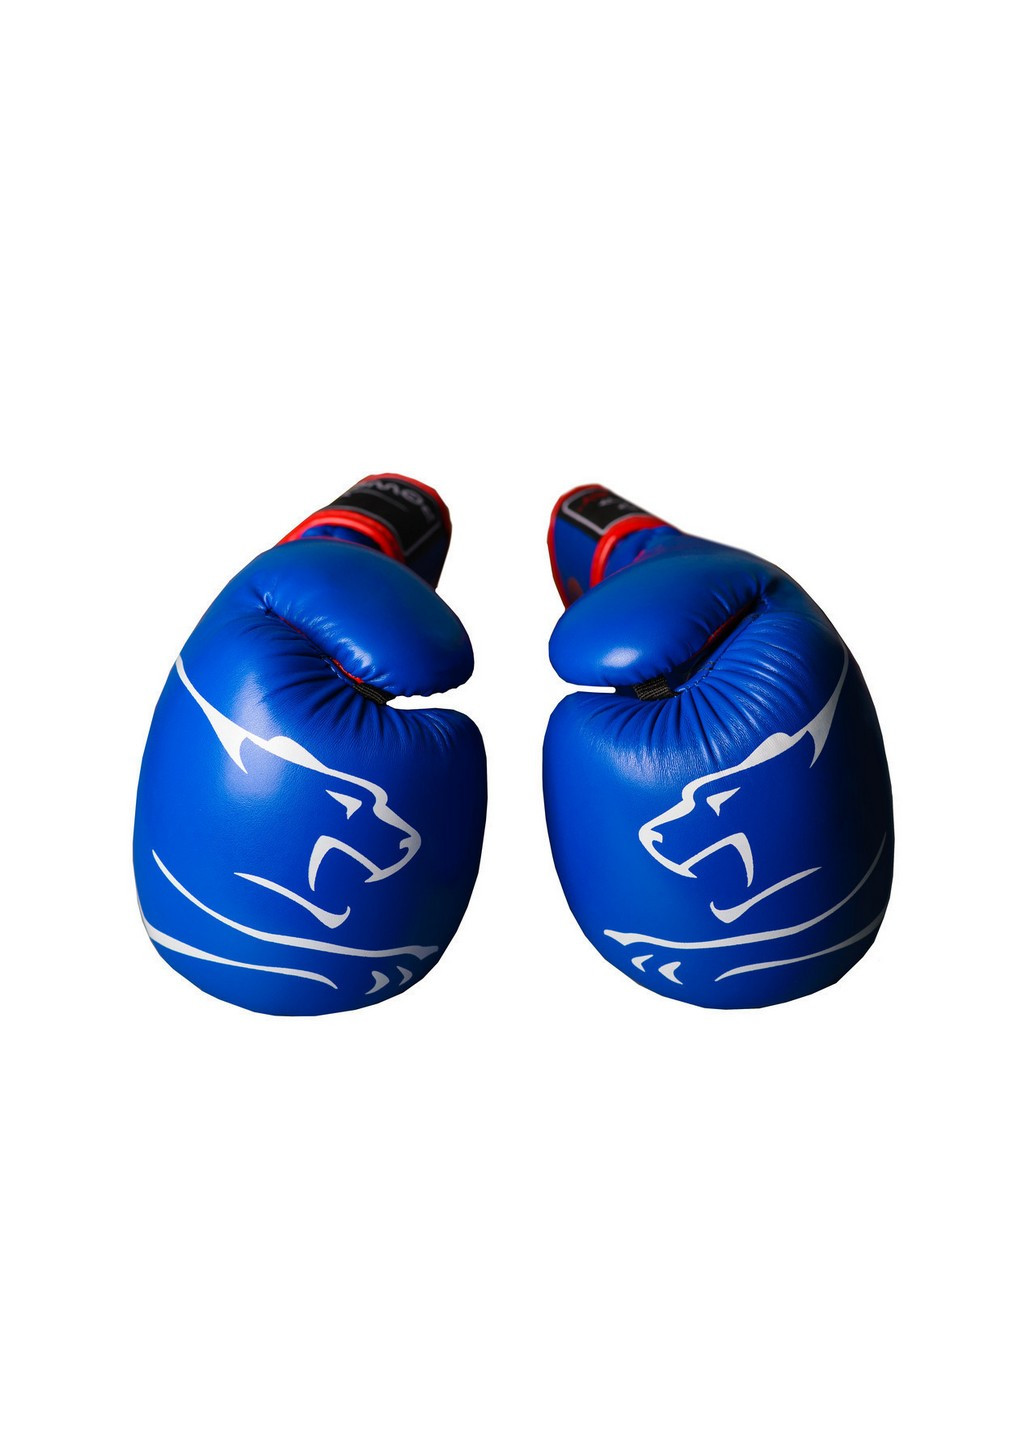 Боксерские перчатки 16 унций PowerPlay (204885668)